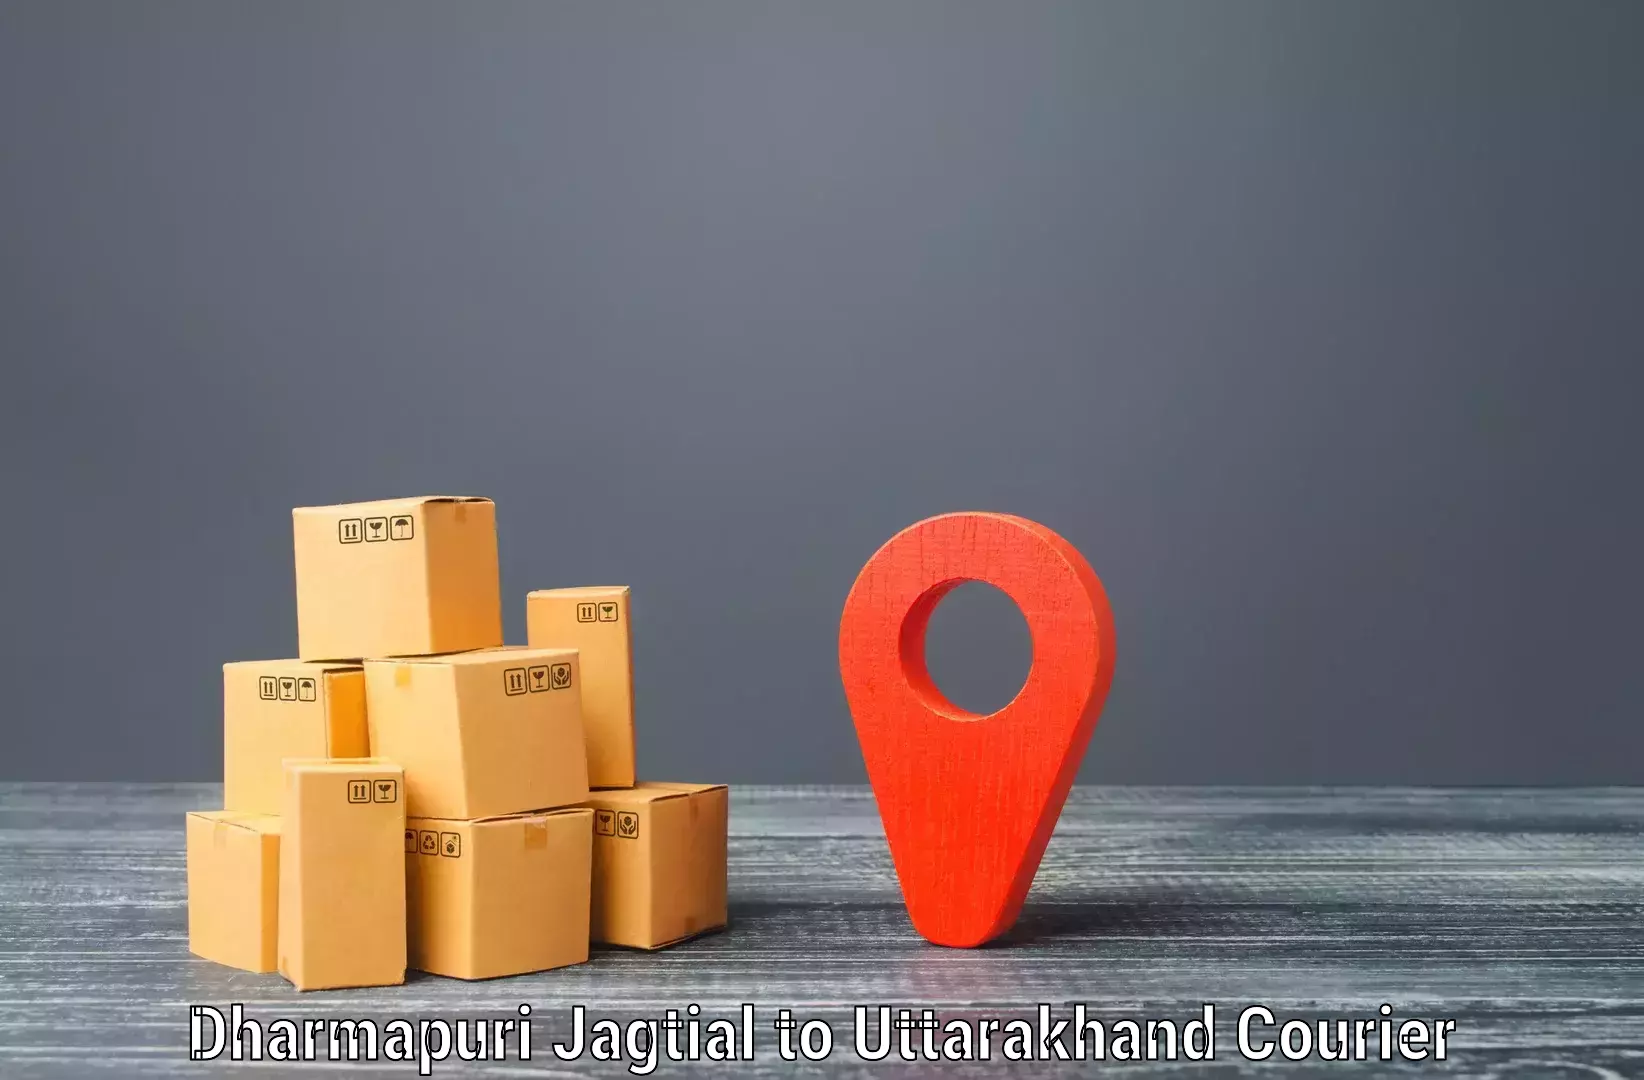 Smart courier technologies Dharmapuri Jagtial to Karnaprayag